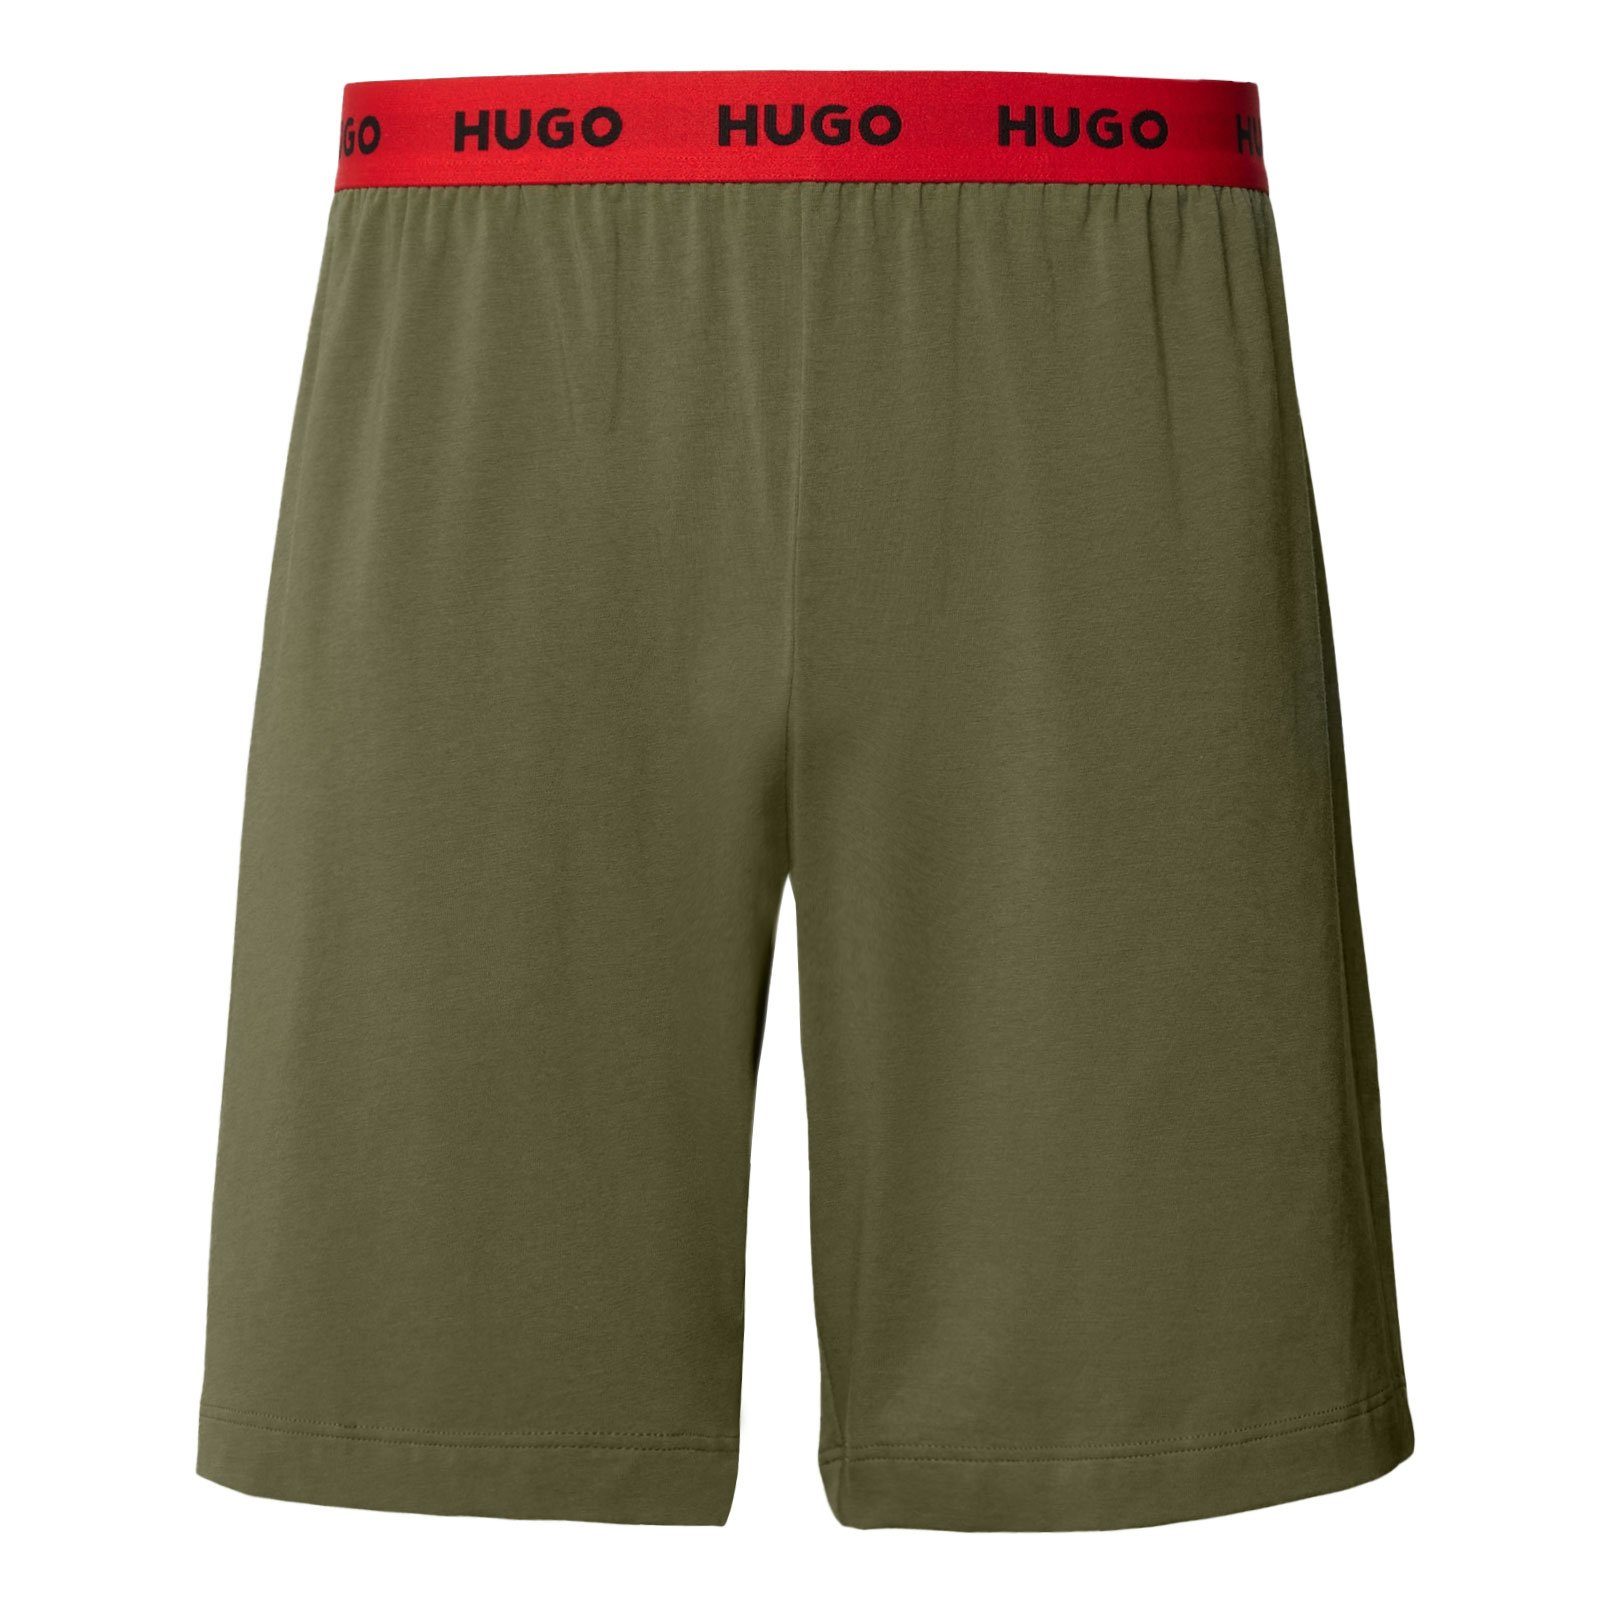 HUGO Pyjamashorts Linked Short Pant mit umlaufendem Markenschriftzug am Bund 345 open green